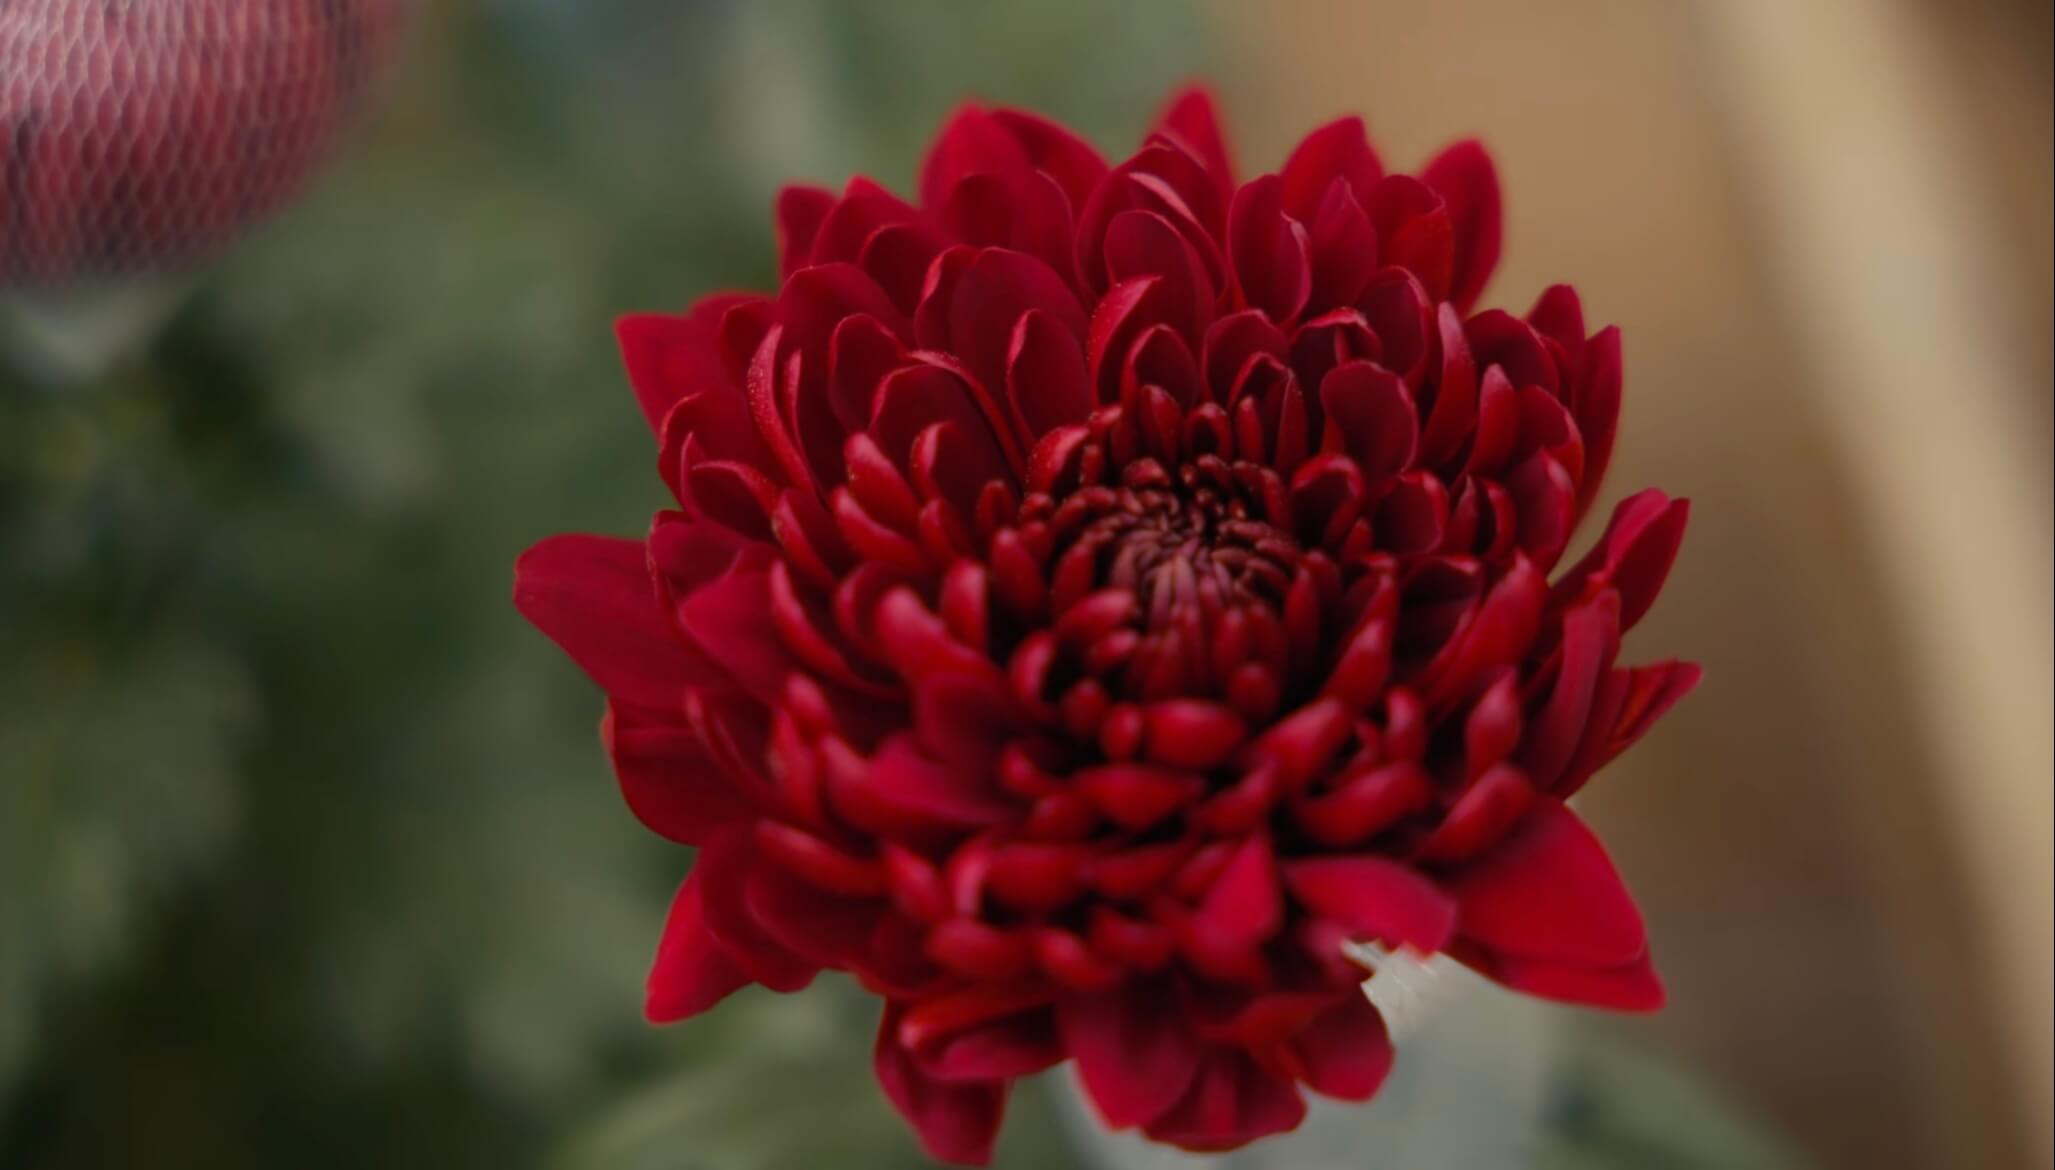 Один из первых цветков, который попал в поле зрения — хризантема сорта Magnum.